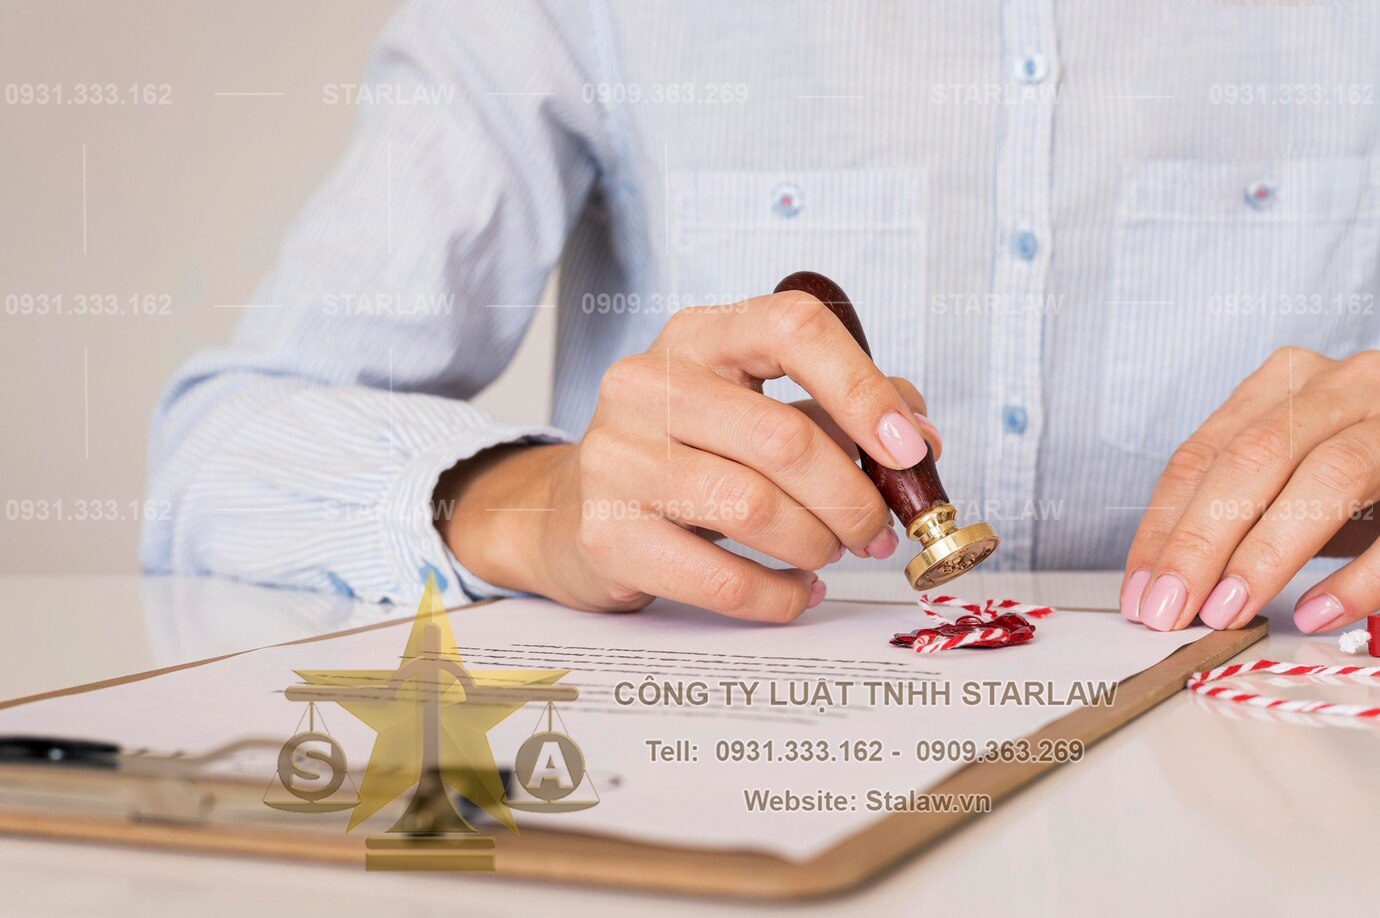 Dịch vụ đăng ký nhãn hiệu hàng hóa tại Hà Nội Dich%20vu%20dang%20ky%20nhan%20hieu%20hang%20hoa